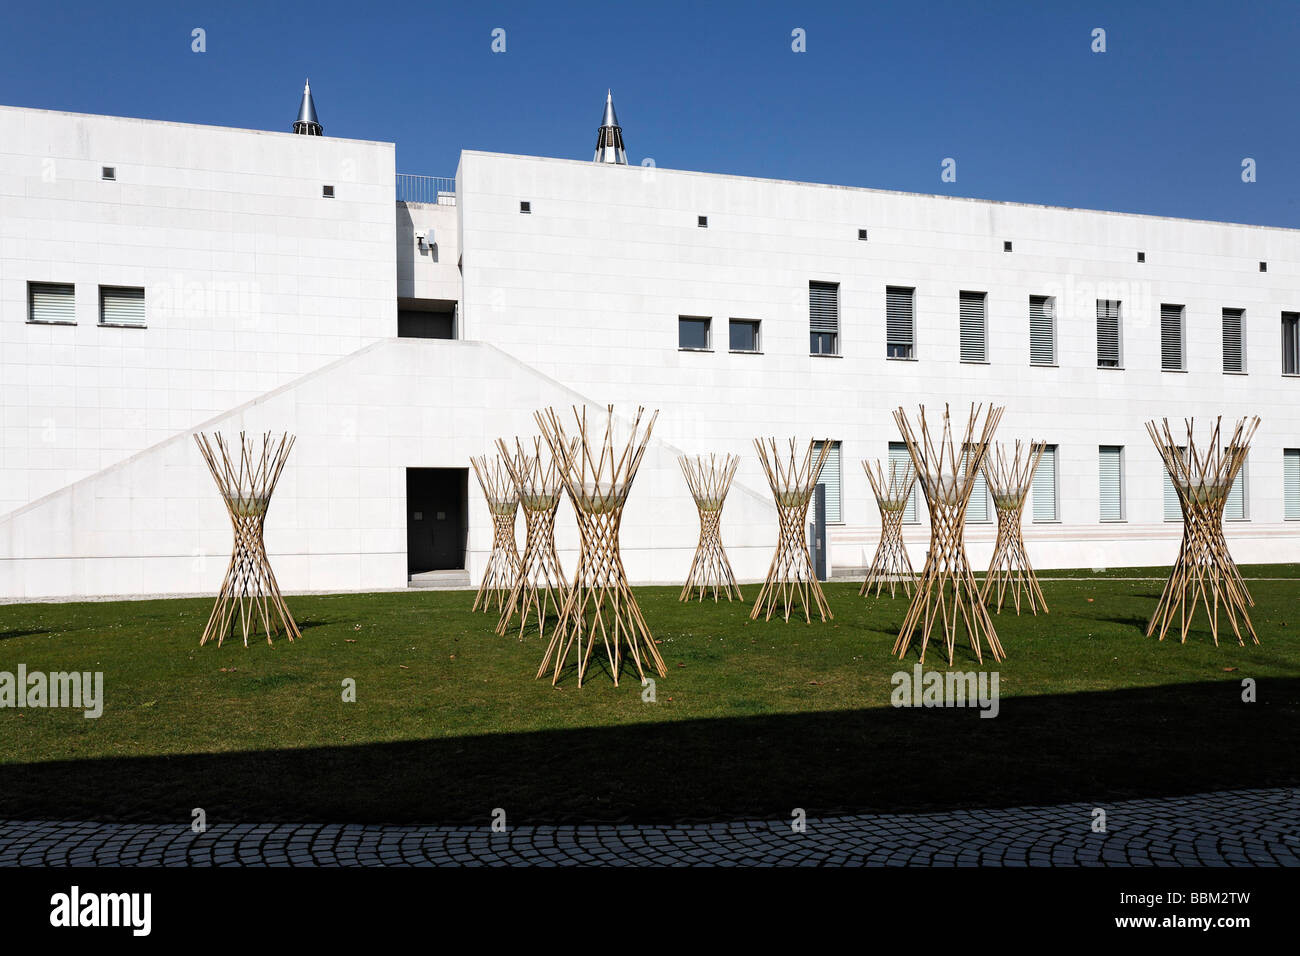 Art- y la exposición del Salón de la República Federal Alemana, sitio al aire libre con esculturas modernas, Bonn, Renania del Norte-Westfalia, UE Foto de stock